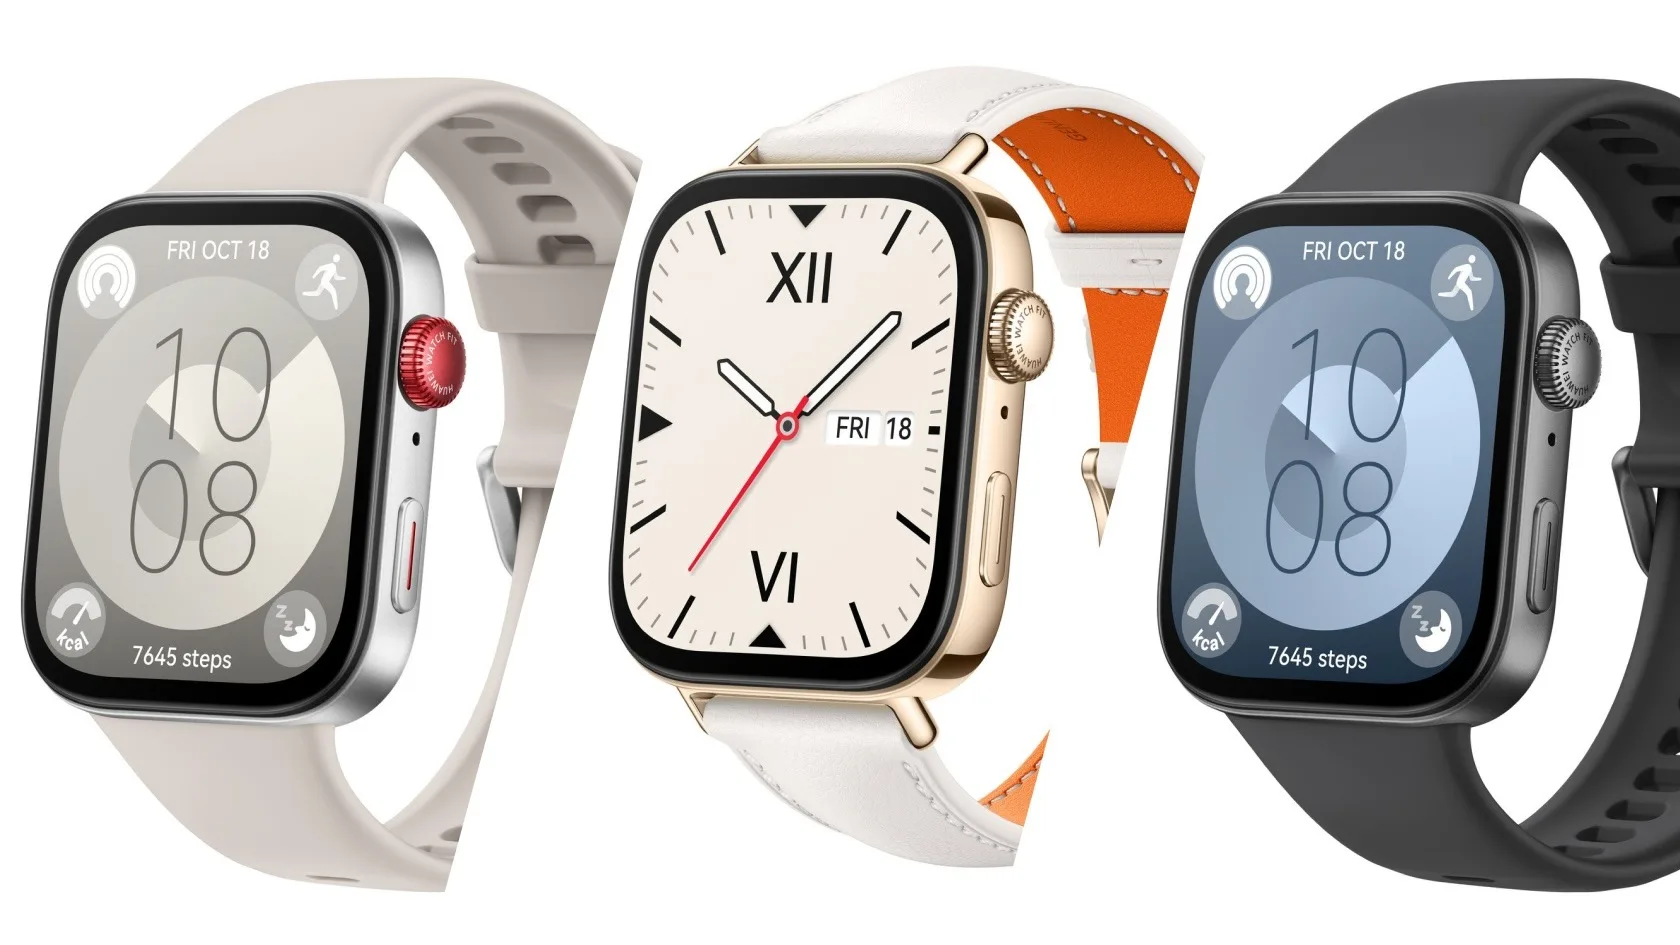 La Huawei Watch Fit 3 arrive : Un design évoquant l'Apple Watch et des fonctions optimisées